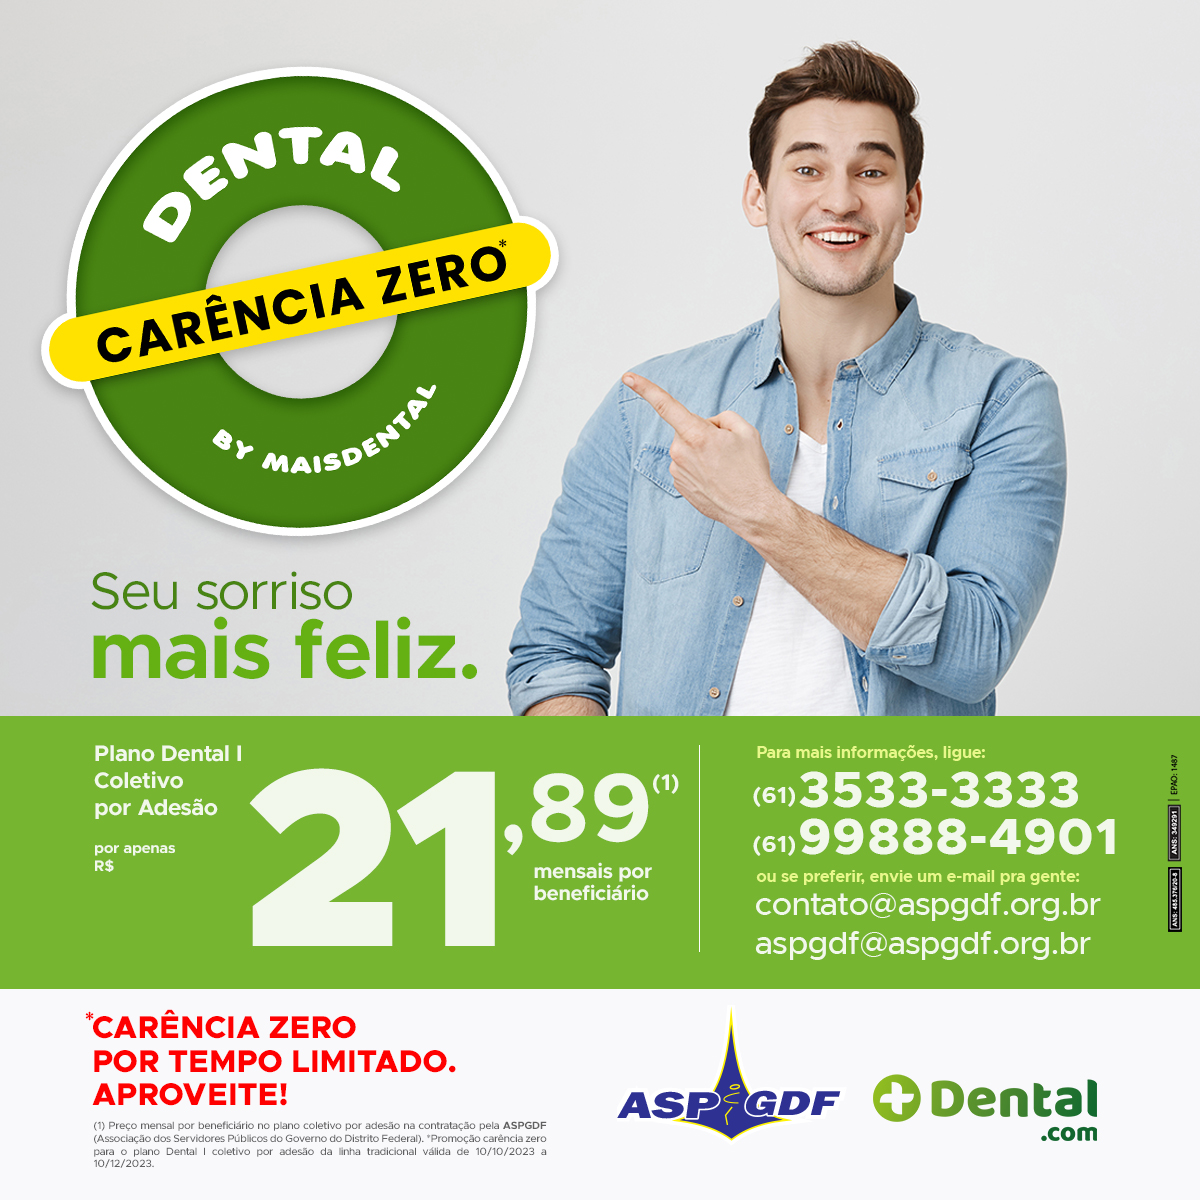 Dental_I_Coletivo_Adesao_DF